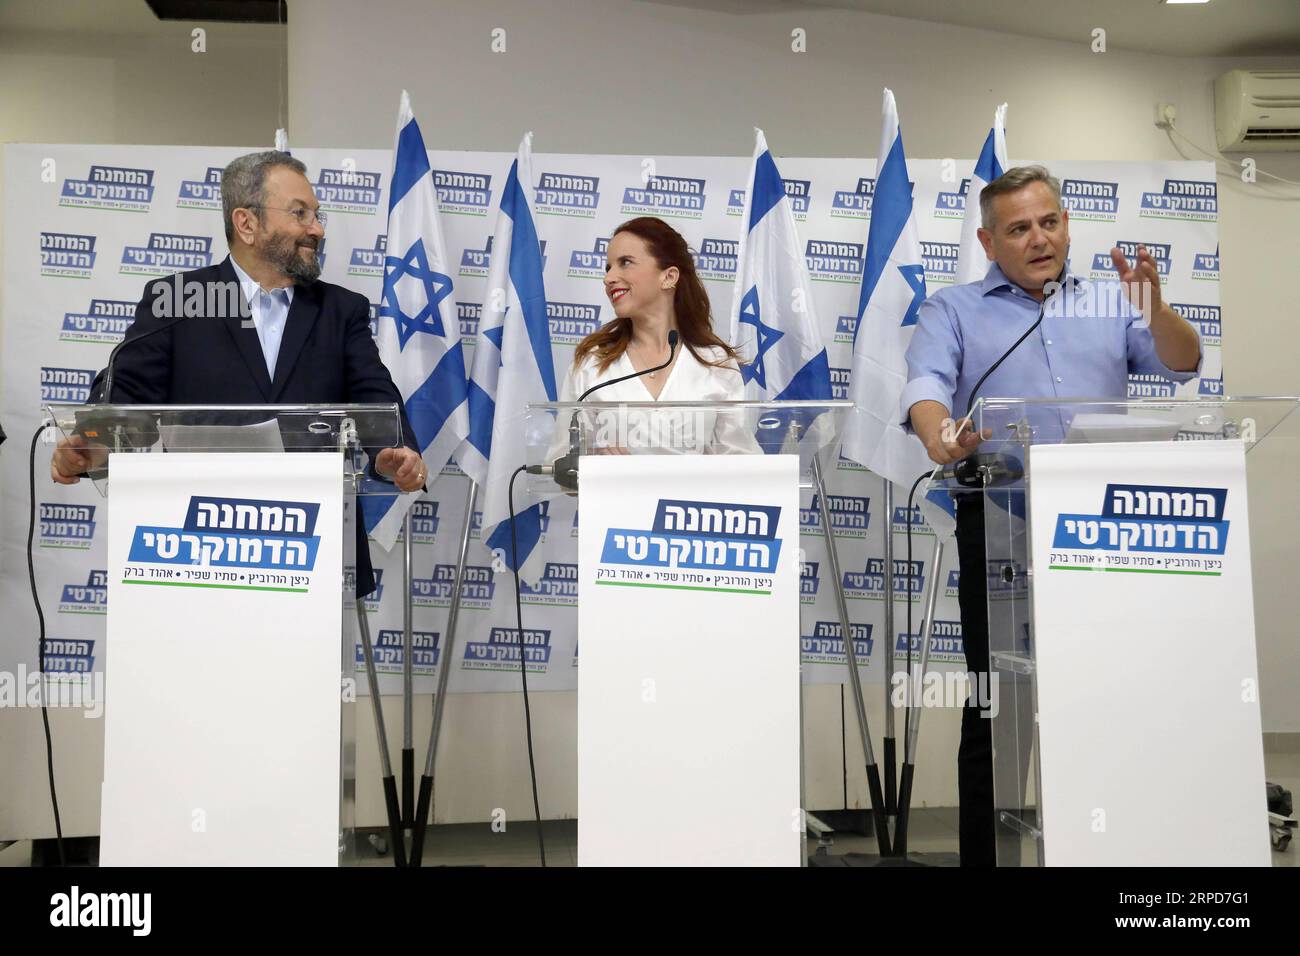 (190725) -- TEL AVIV, 25 juillet 2019 (Xinhua) -- l'ancien Premier ministre israélien Ehud Barak (à gauche) assiste à une conférence de presse avec Stav Shaffir (C), une femme juriste du parti travailliste, et Nitzan Horowitz, président du parti Meretz, à tel Aviv, Israël, le 25 juillet 2019. Trois forces dans le camp de gauche israélien, dont l'ancien Premier ministre Ehud Barak, ont fusionné jeudi pour former une alliance en prévision des prochaines élections prévues pour septembre. (Gideon Markowicz/JINI/document via Xinhua) ISRAËL-TEL AVIV-ELECTIONS-ALLIANCE POLITIQUE PUBLICATIONxNOTxINxCHN Banque D'Images